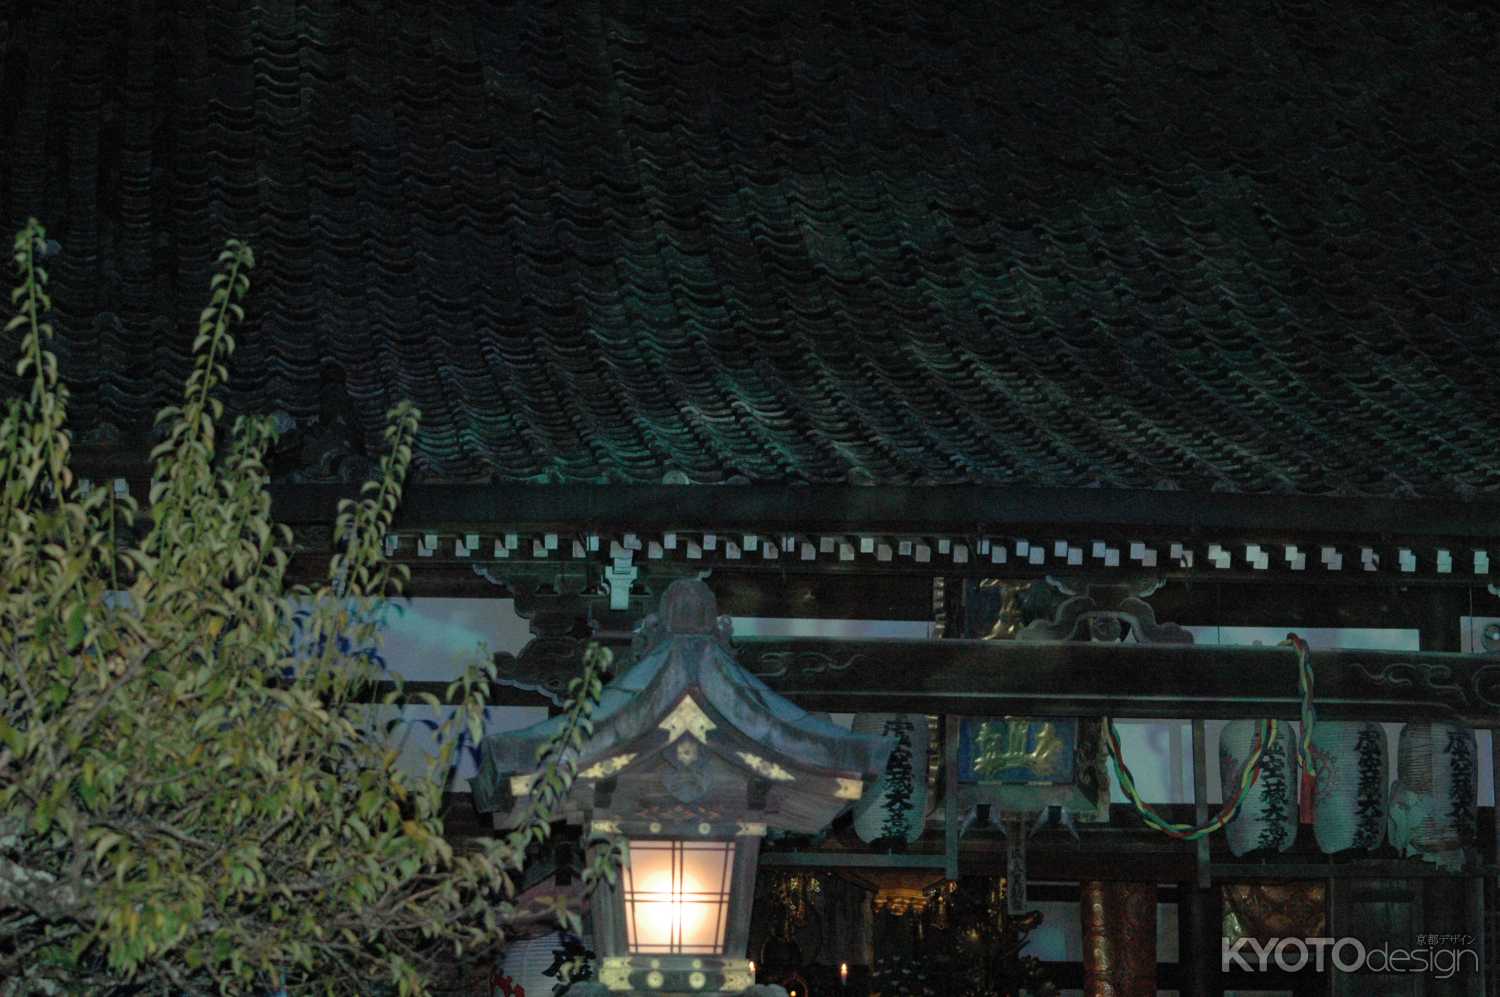 嵐山法輪寺で月を愛でる～東日本大震災の一日も早い復興を願って～